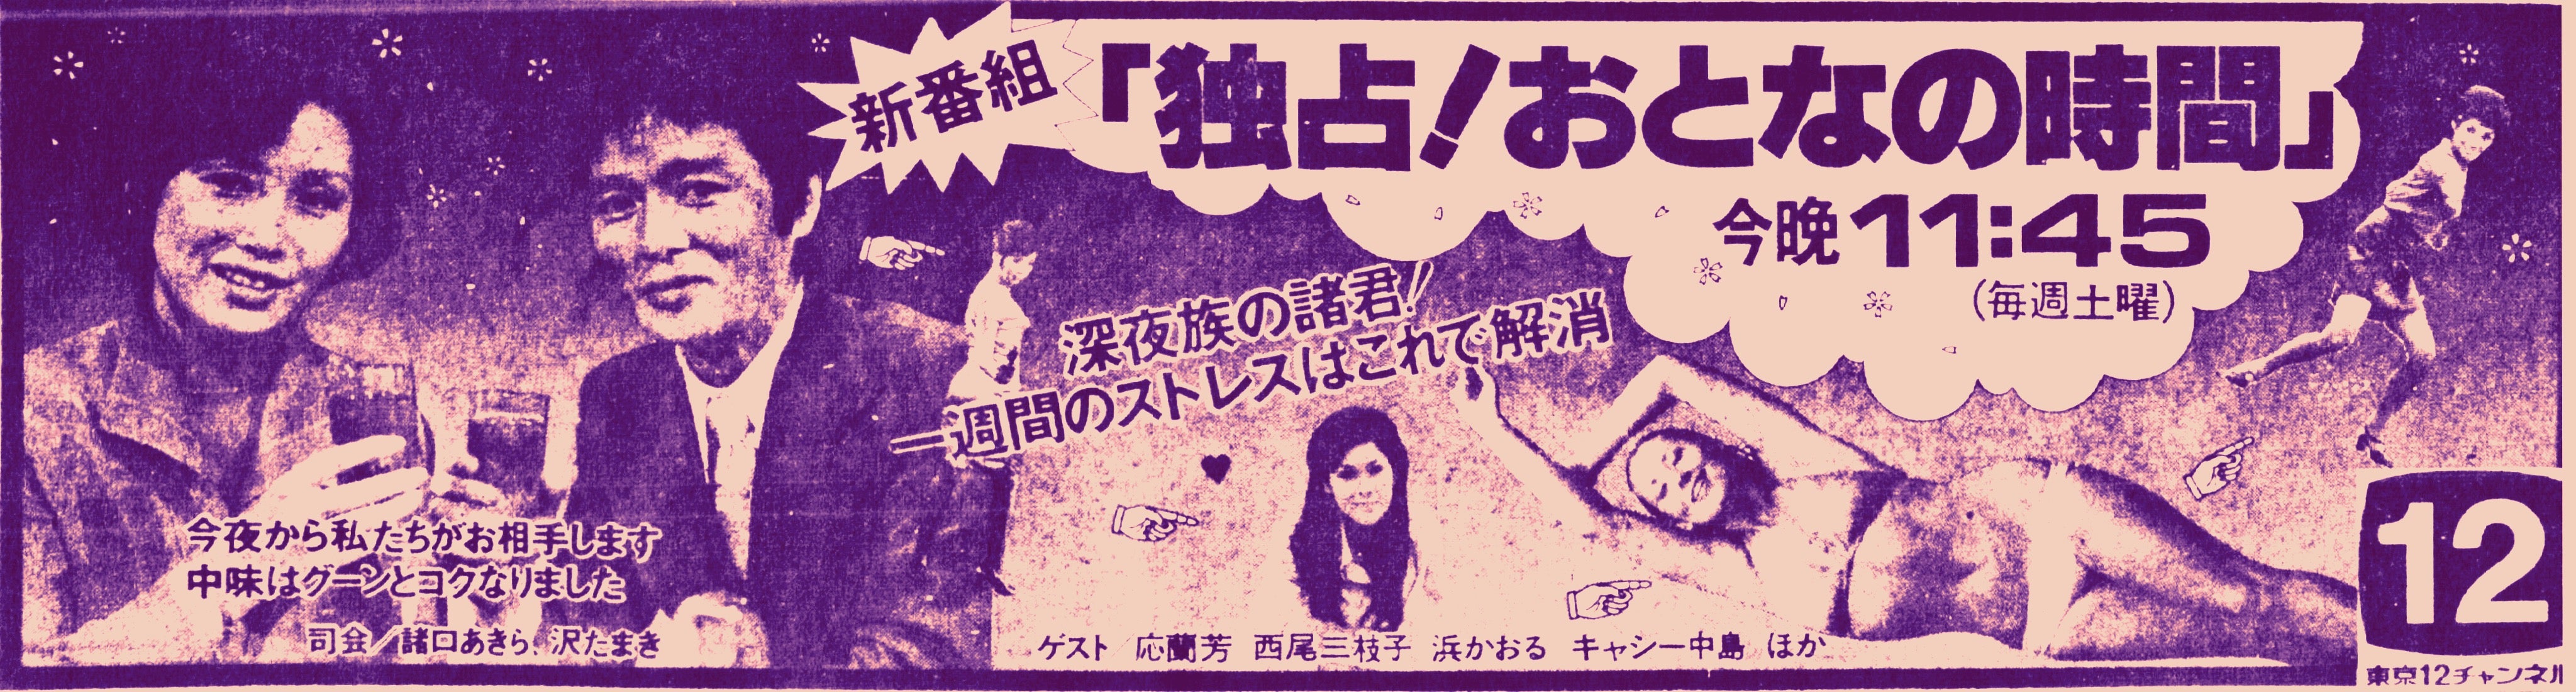 番宣広告シリーズ 独占 おとなの時間 昭和52年3月 高木圭介のマニア道